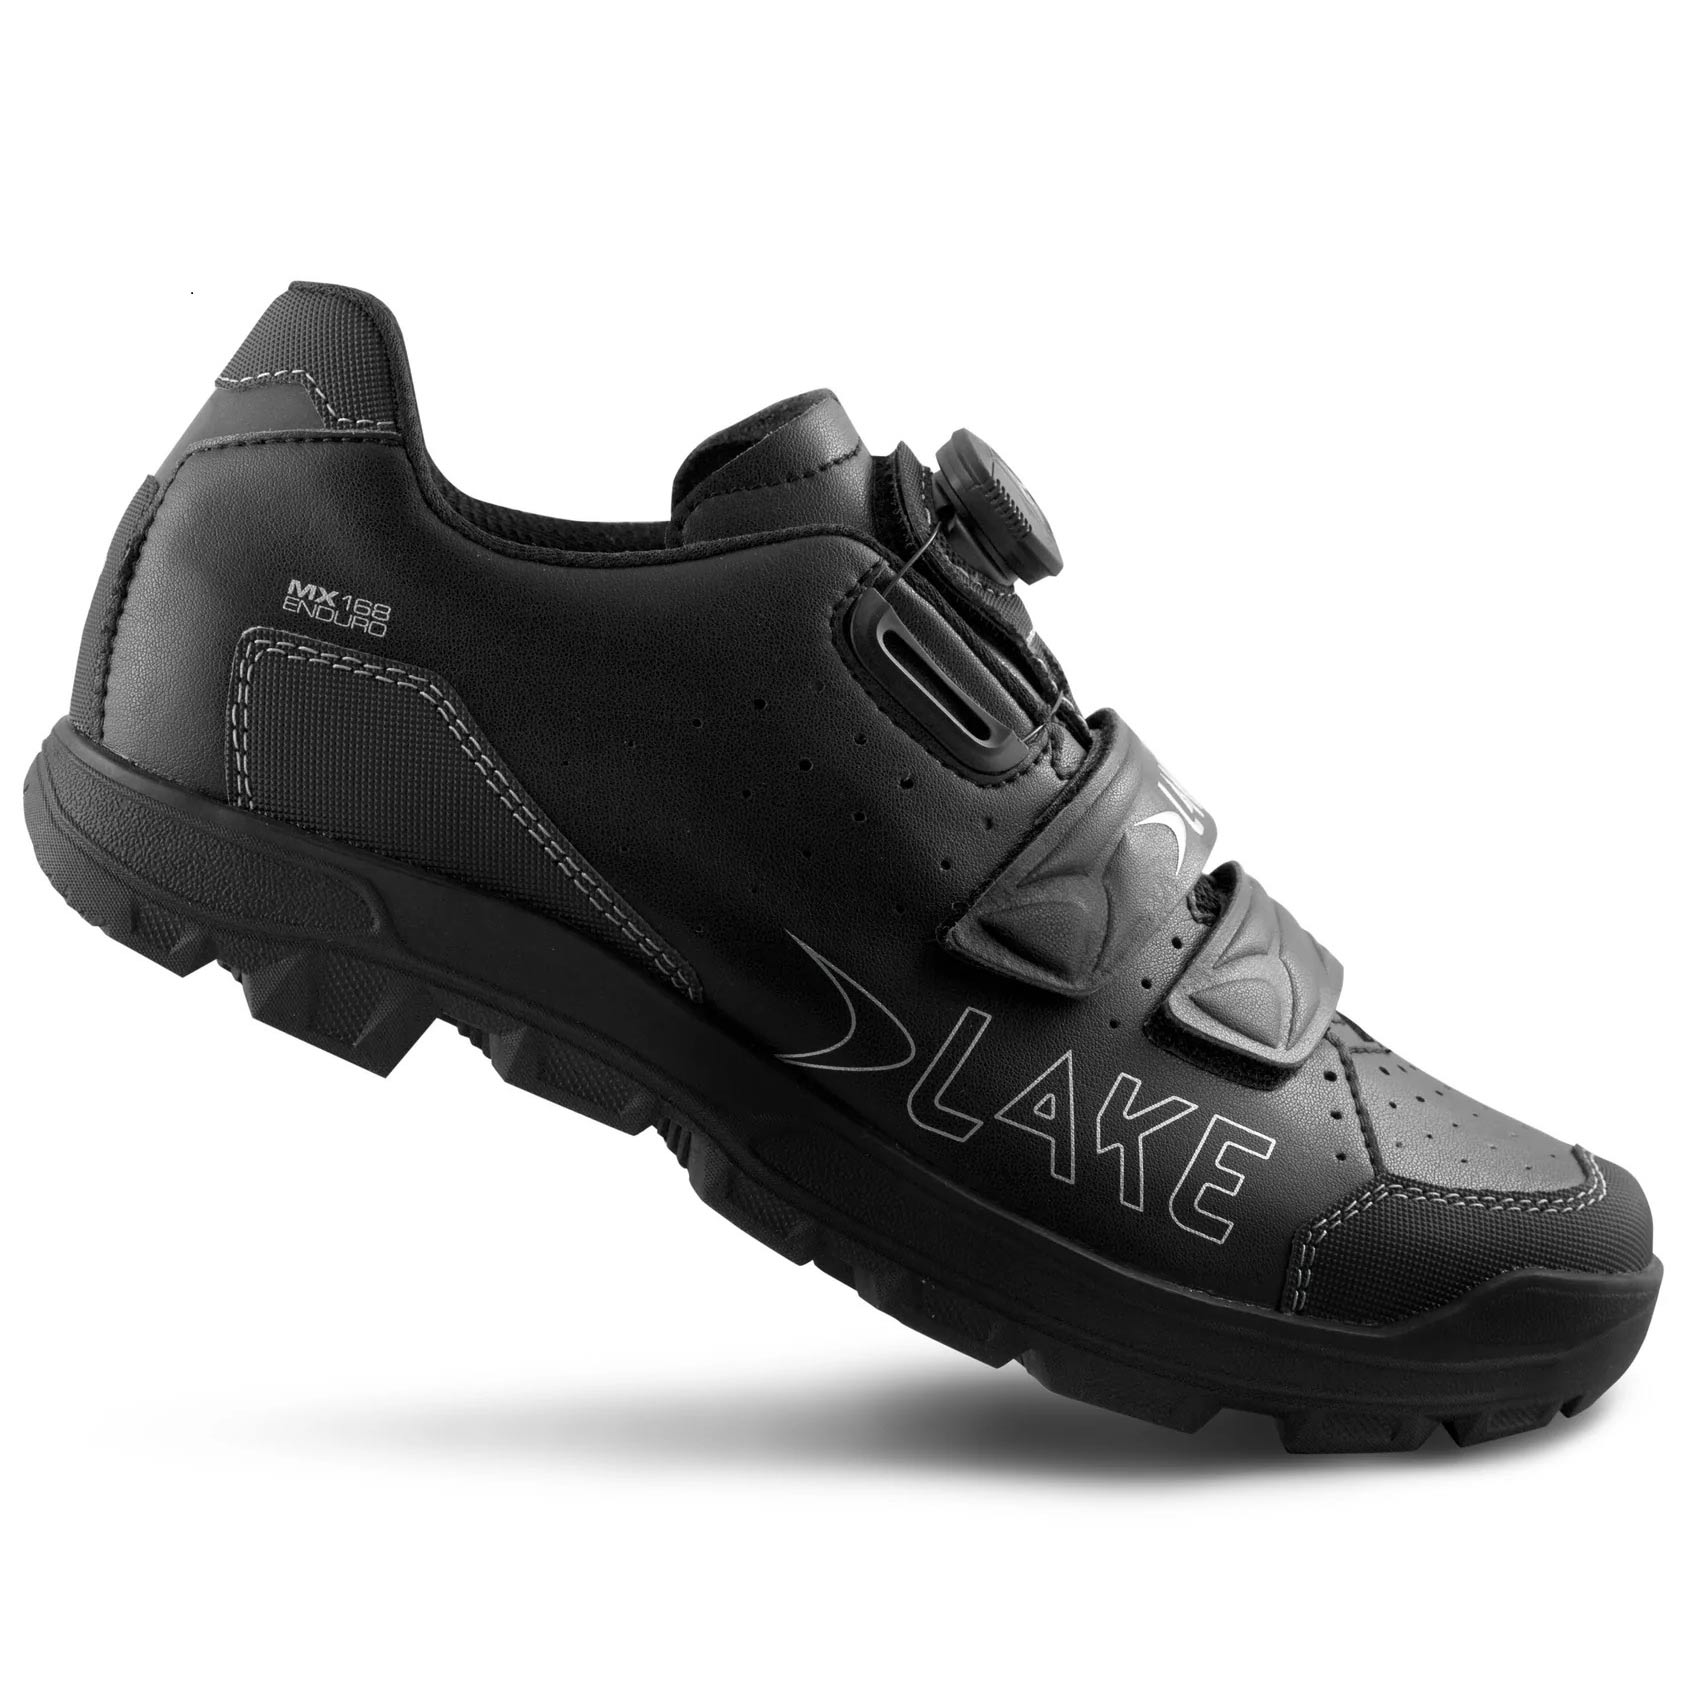 Produktbild von Lake MX 168 Enduro MTB Schuh - schwarz